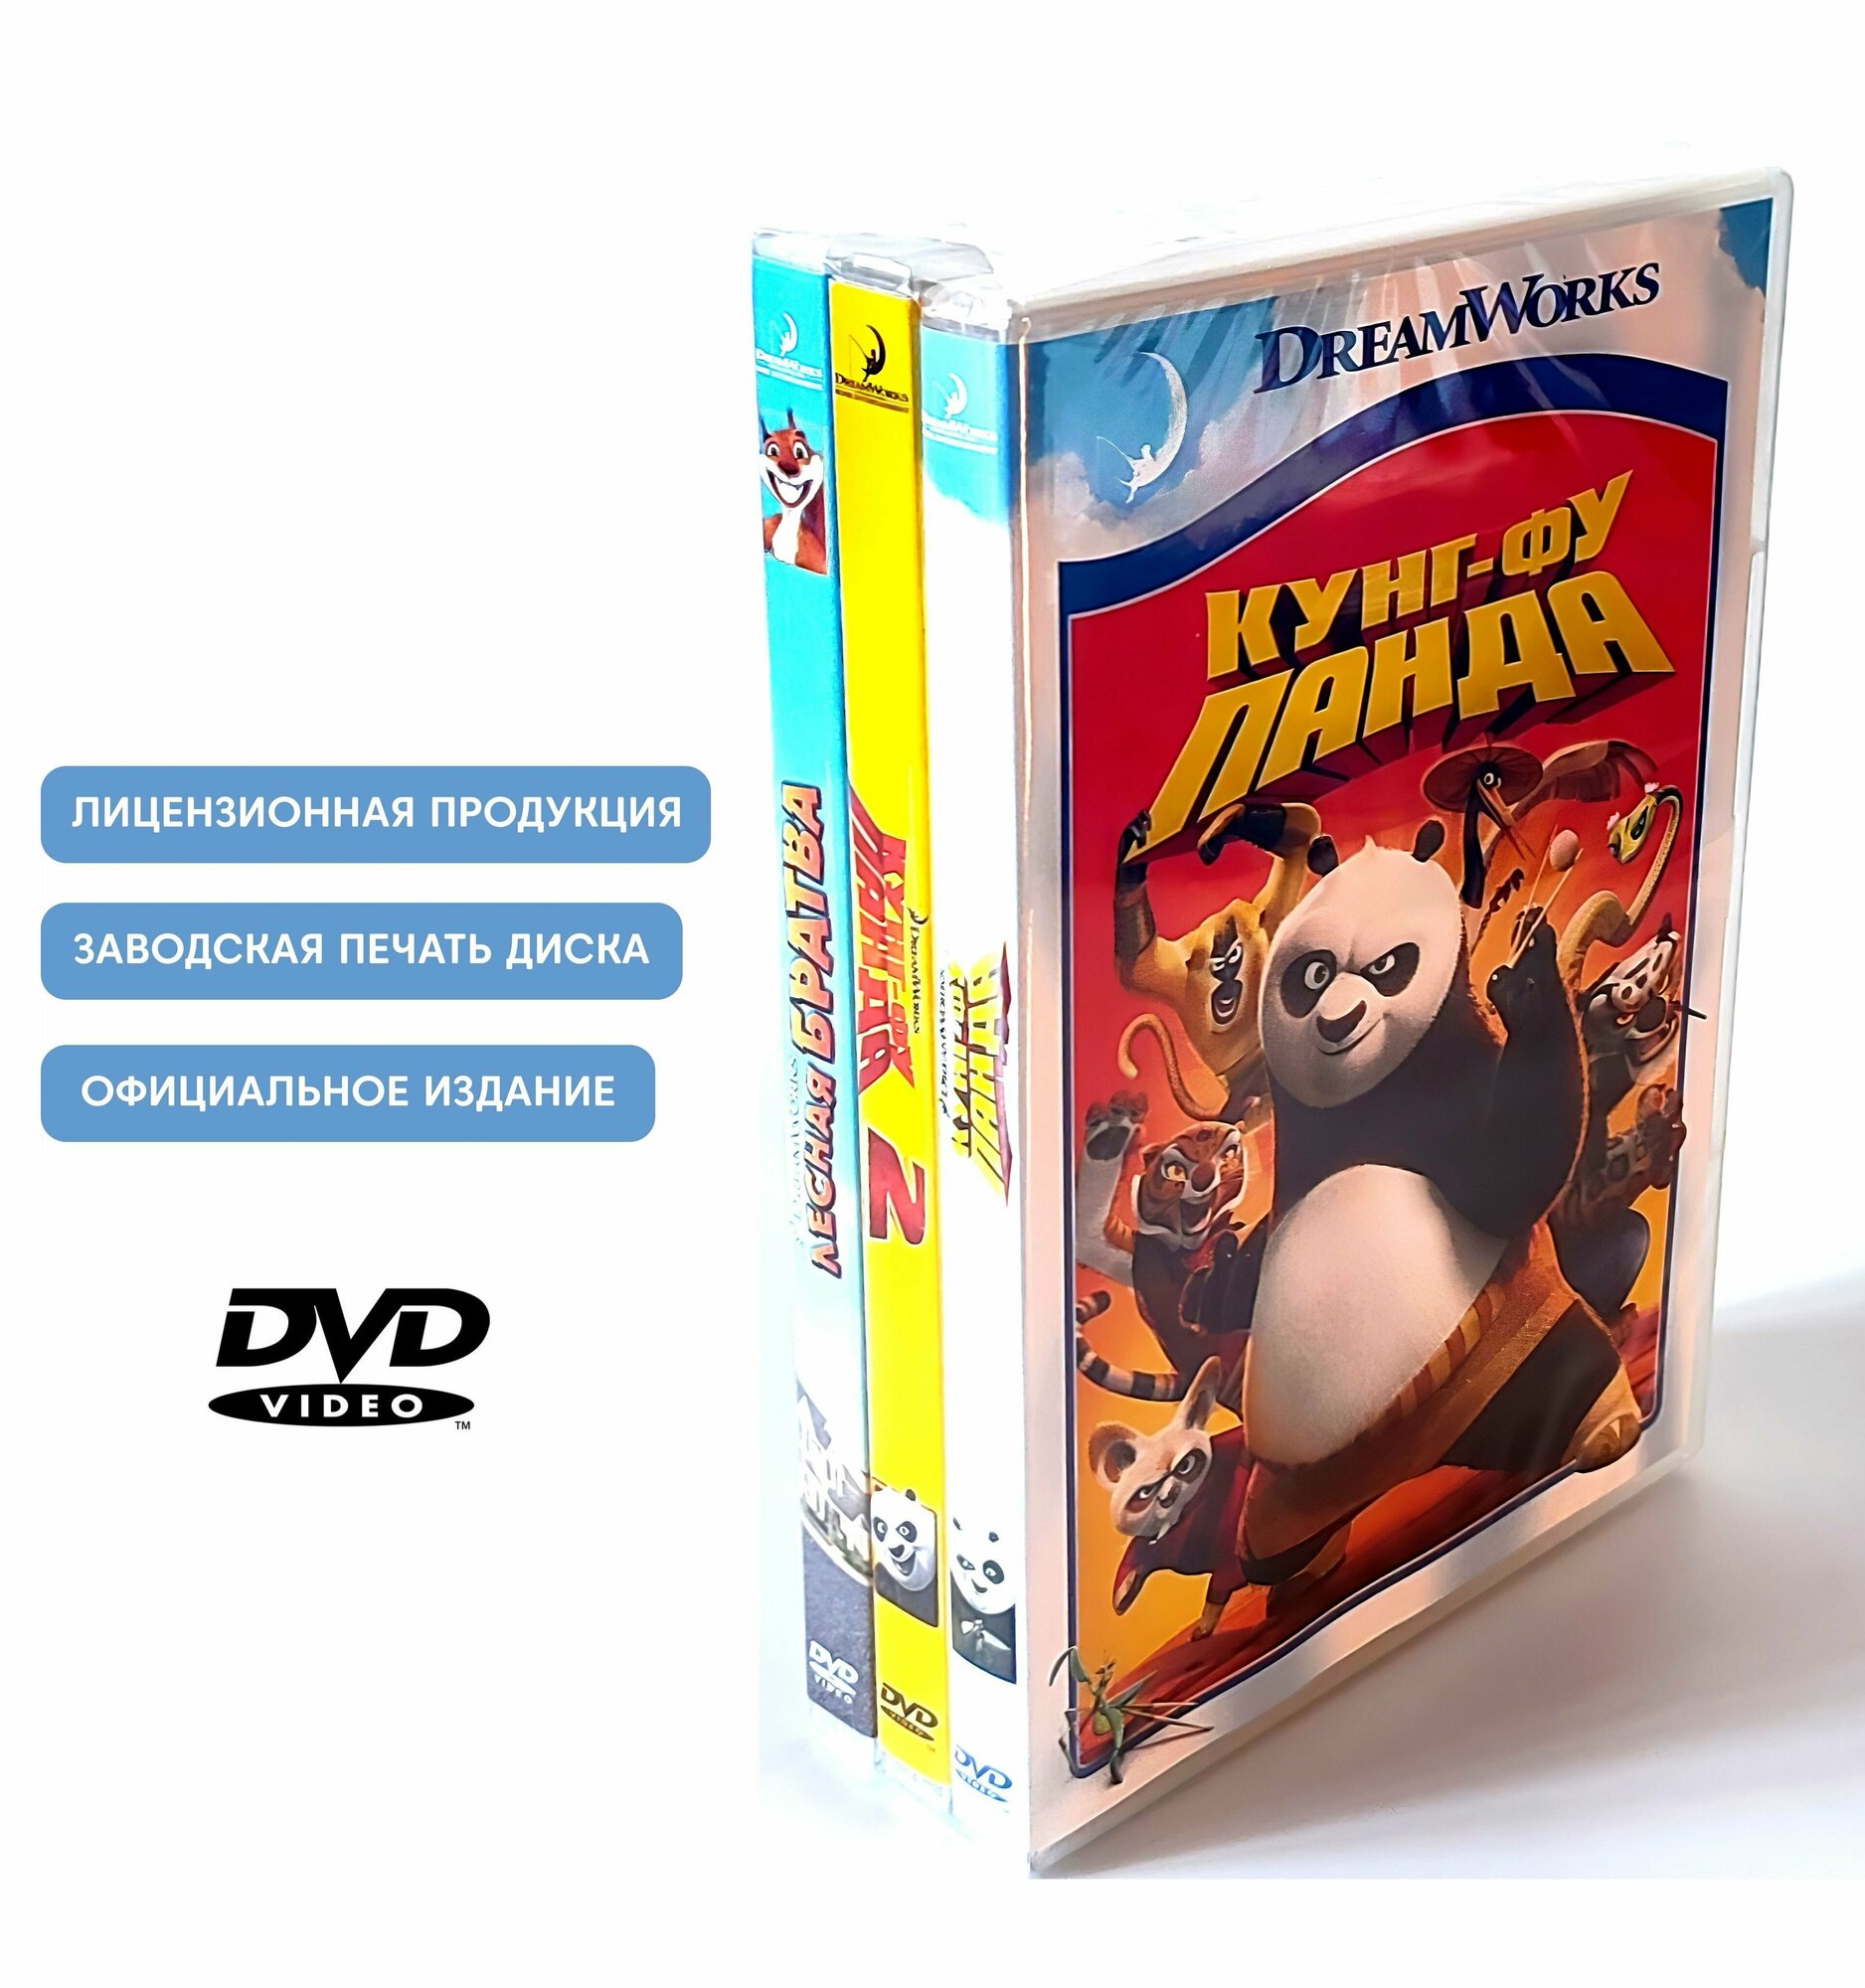 Мультфильмы. DreamWorks. Кунг-фу Панда 1-2/ Лесная братва (3 DVD диска) приключения для всей семьи / 6+, 3 отдельных бокса